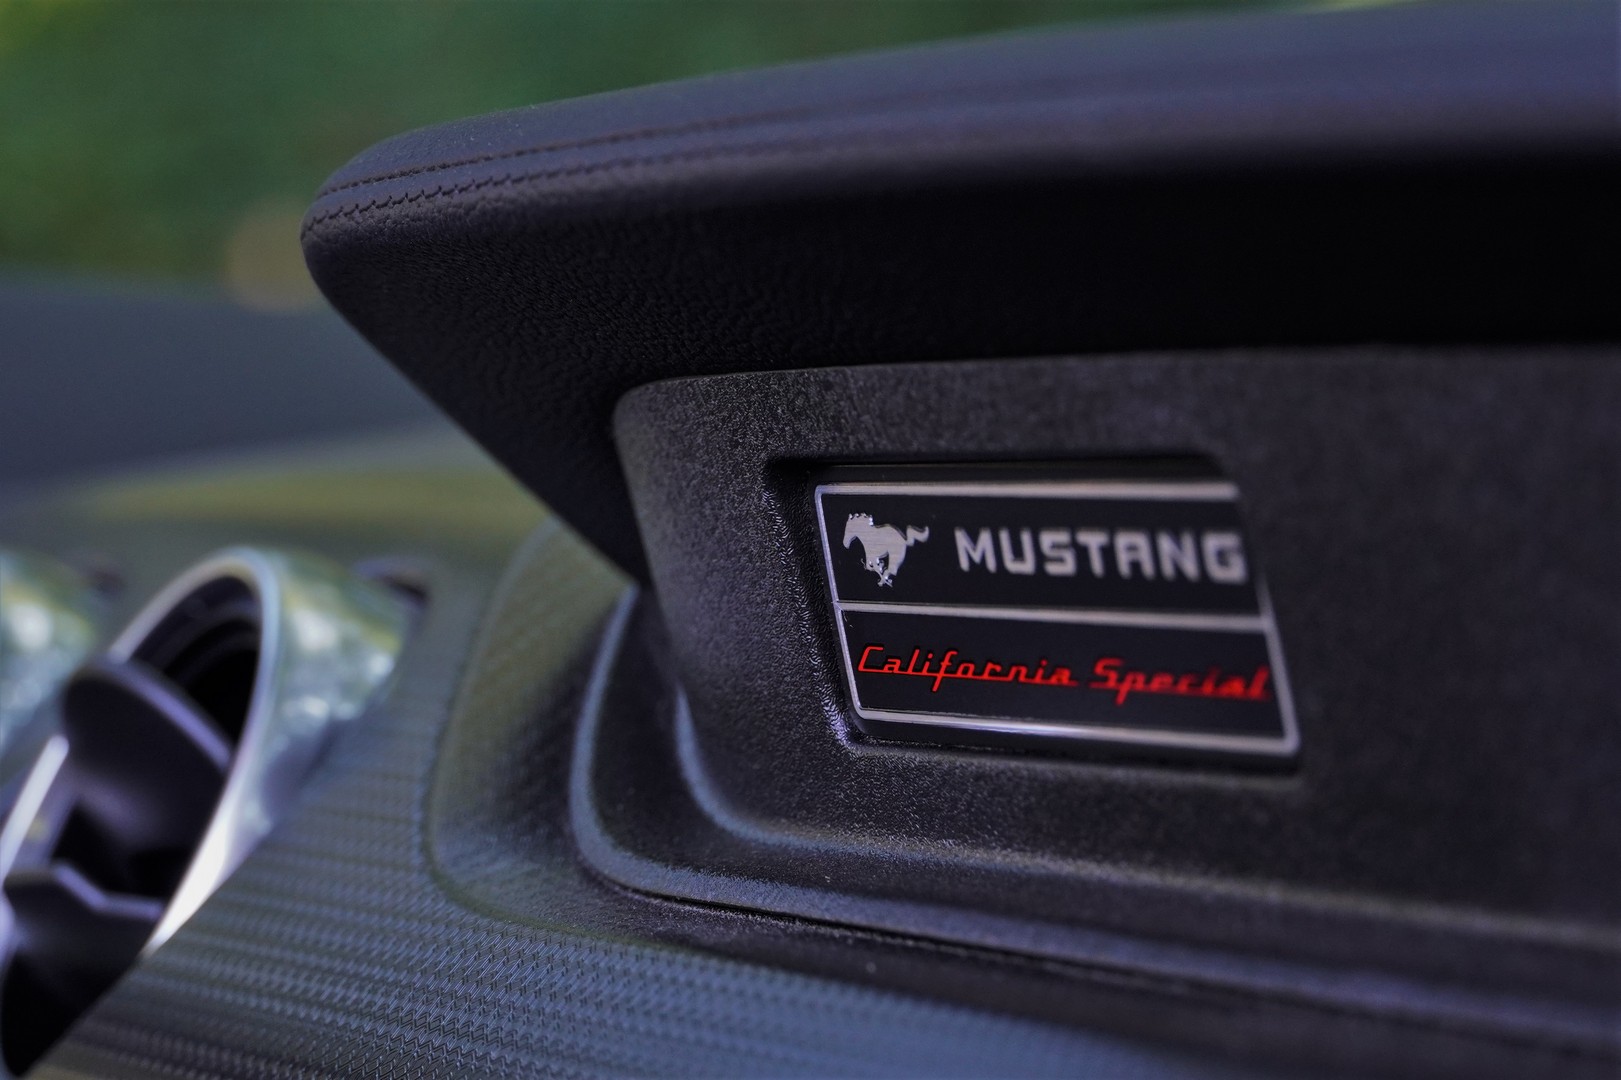 Kaliforniából, speciálba’! – Ford Mustang kabrió 34